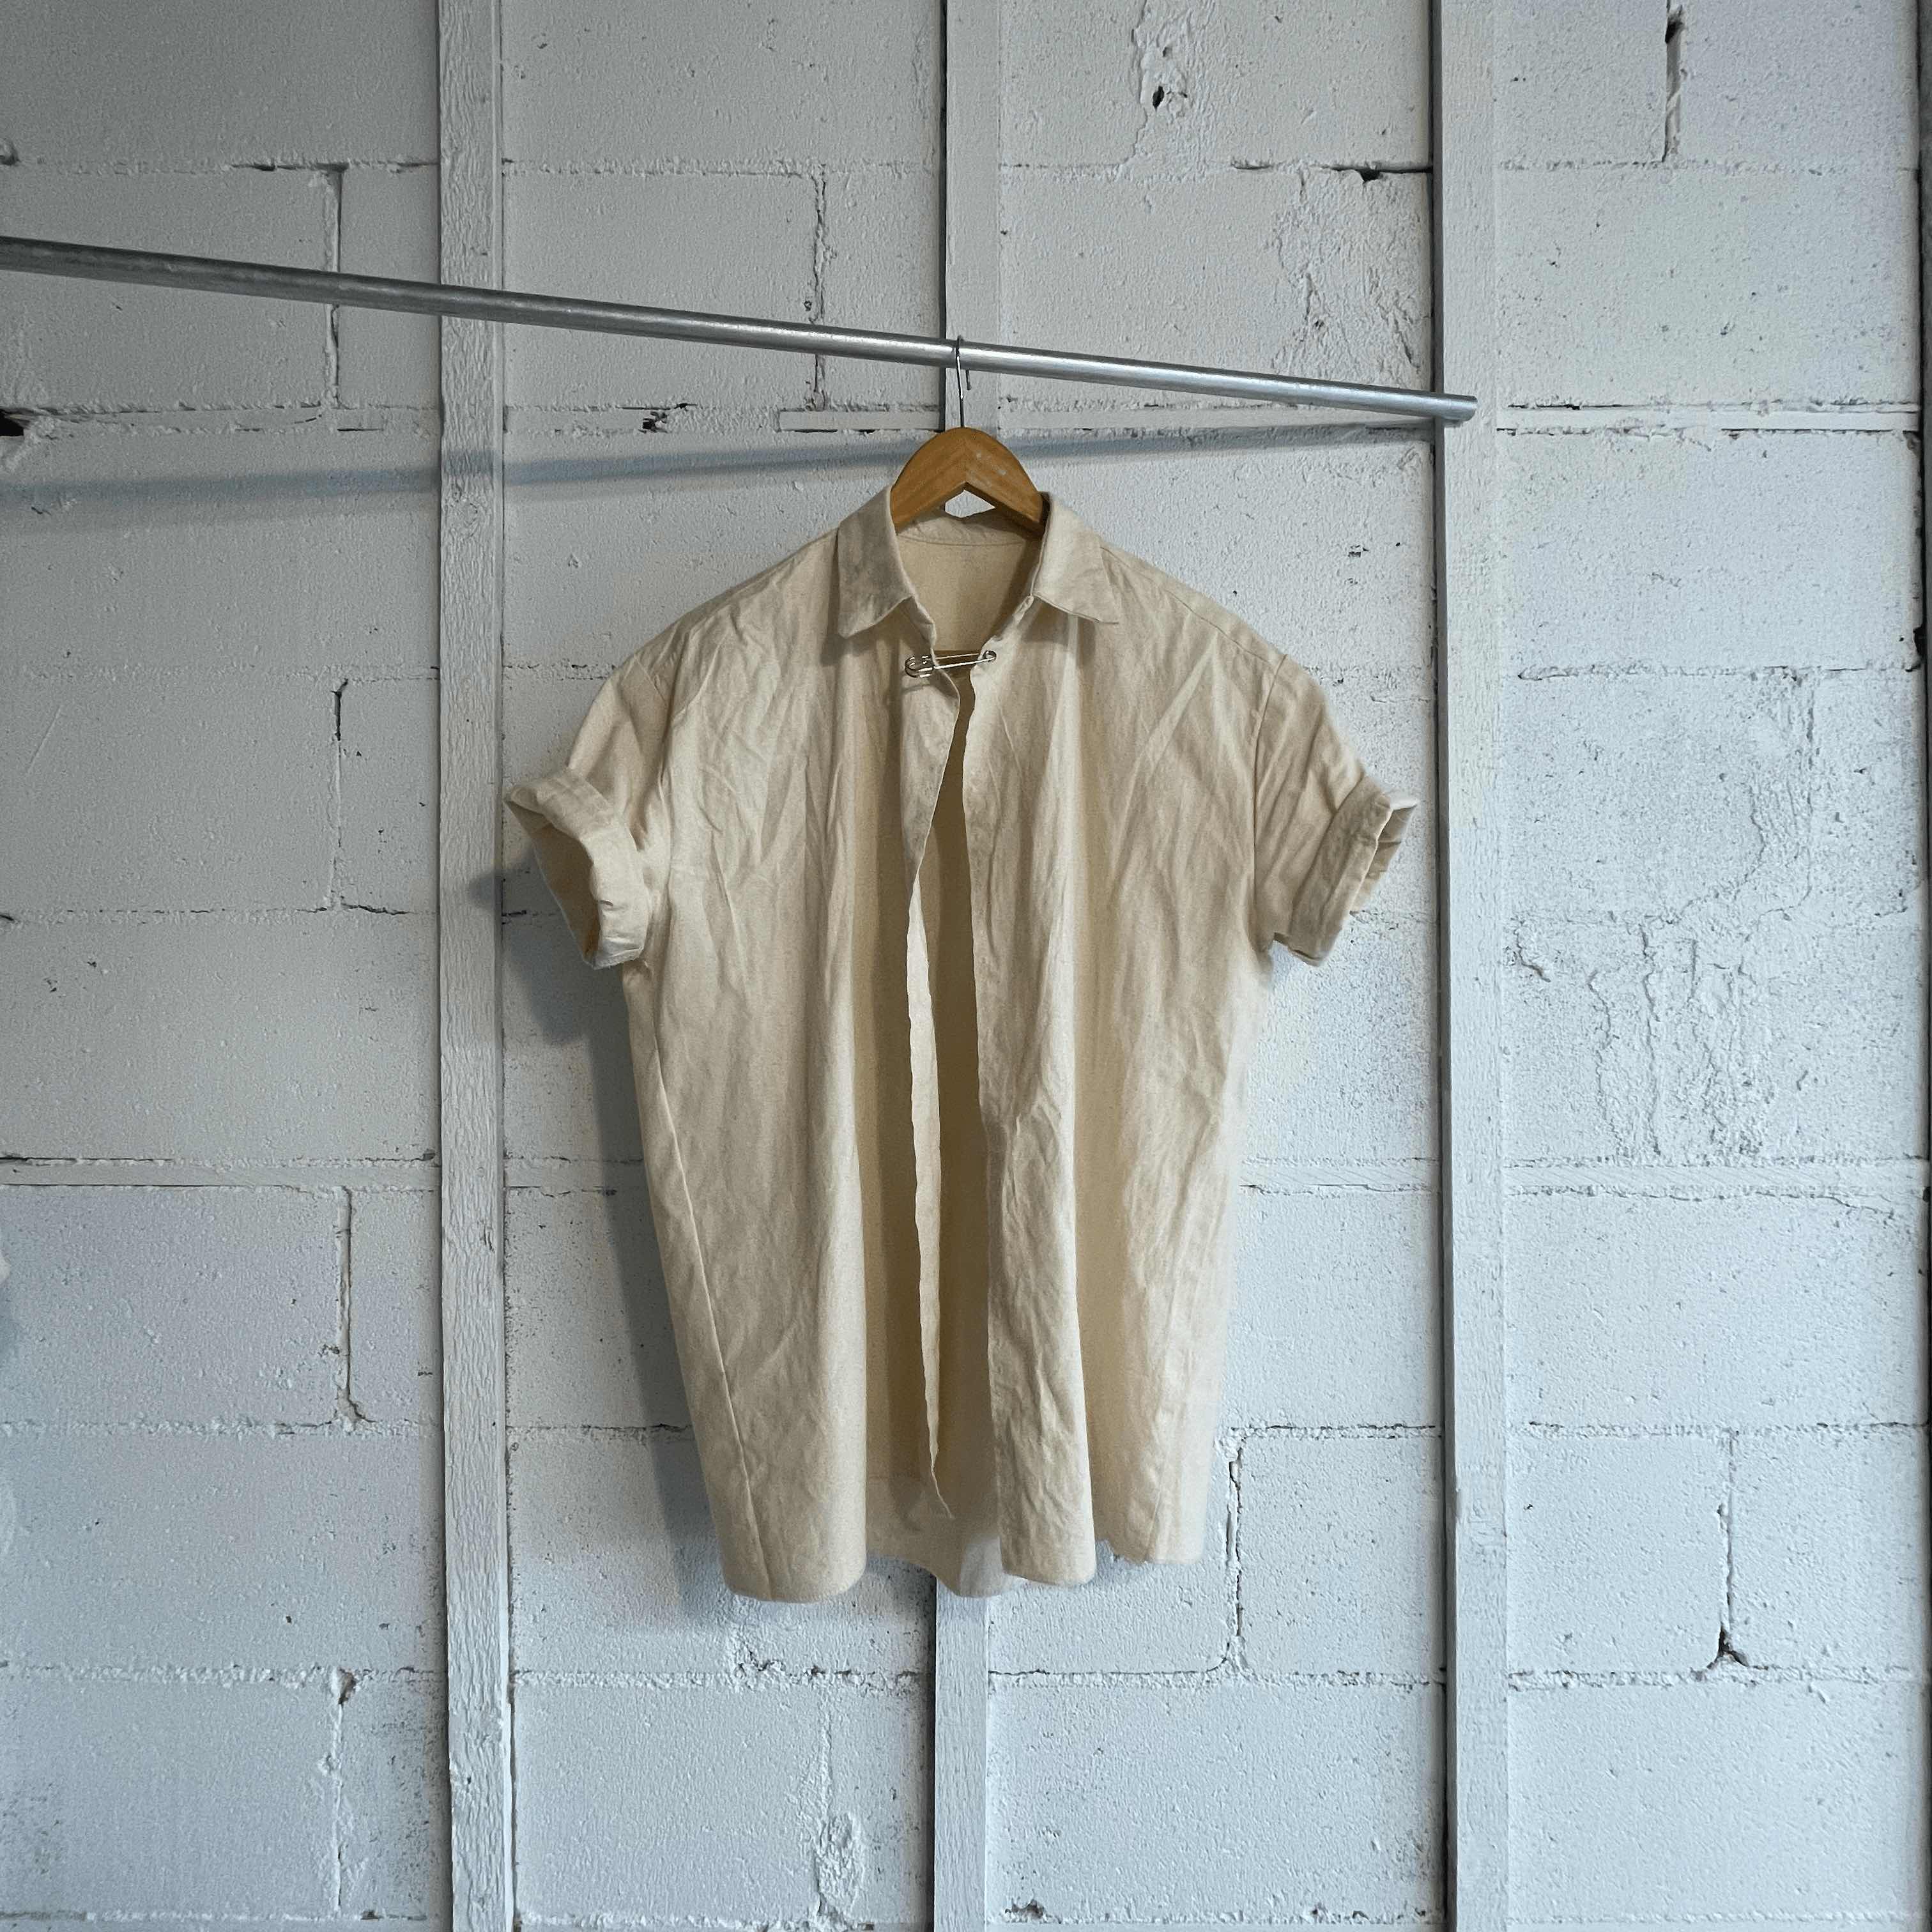 Smith shirt prototype - wear test